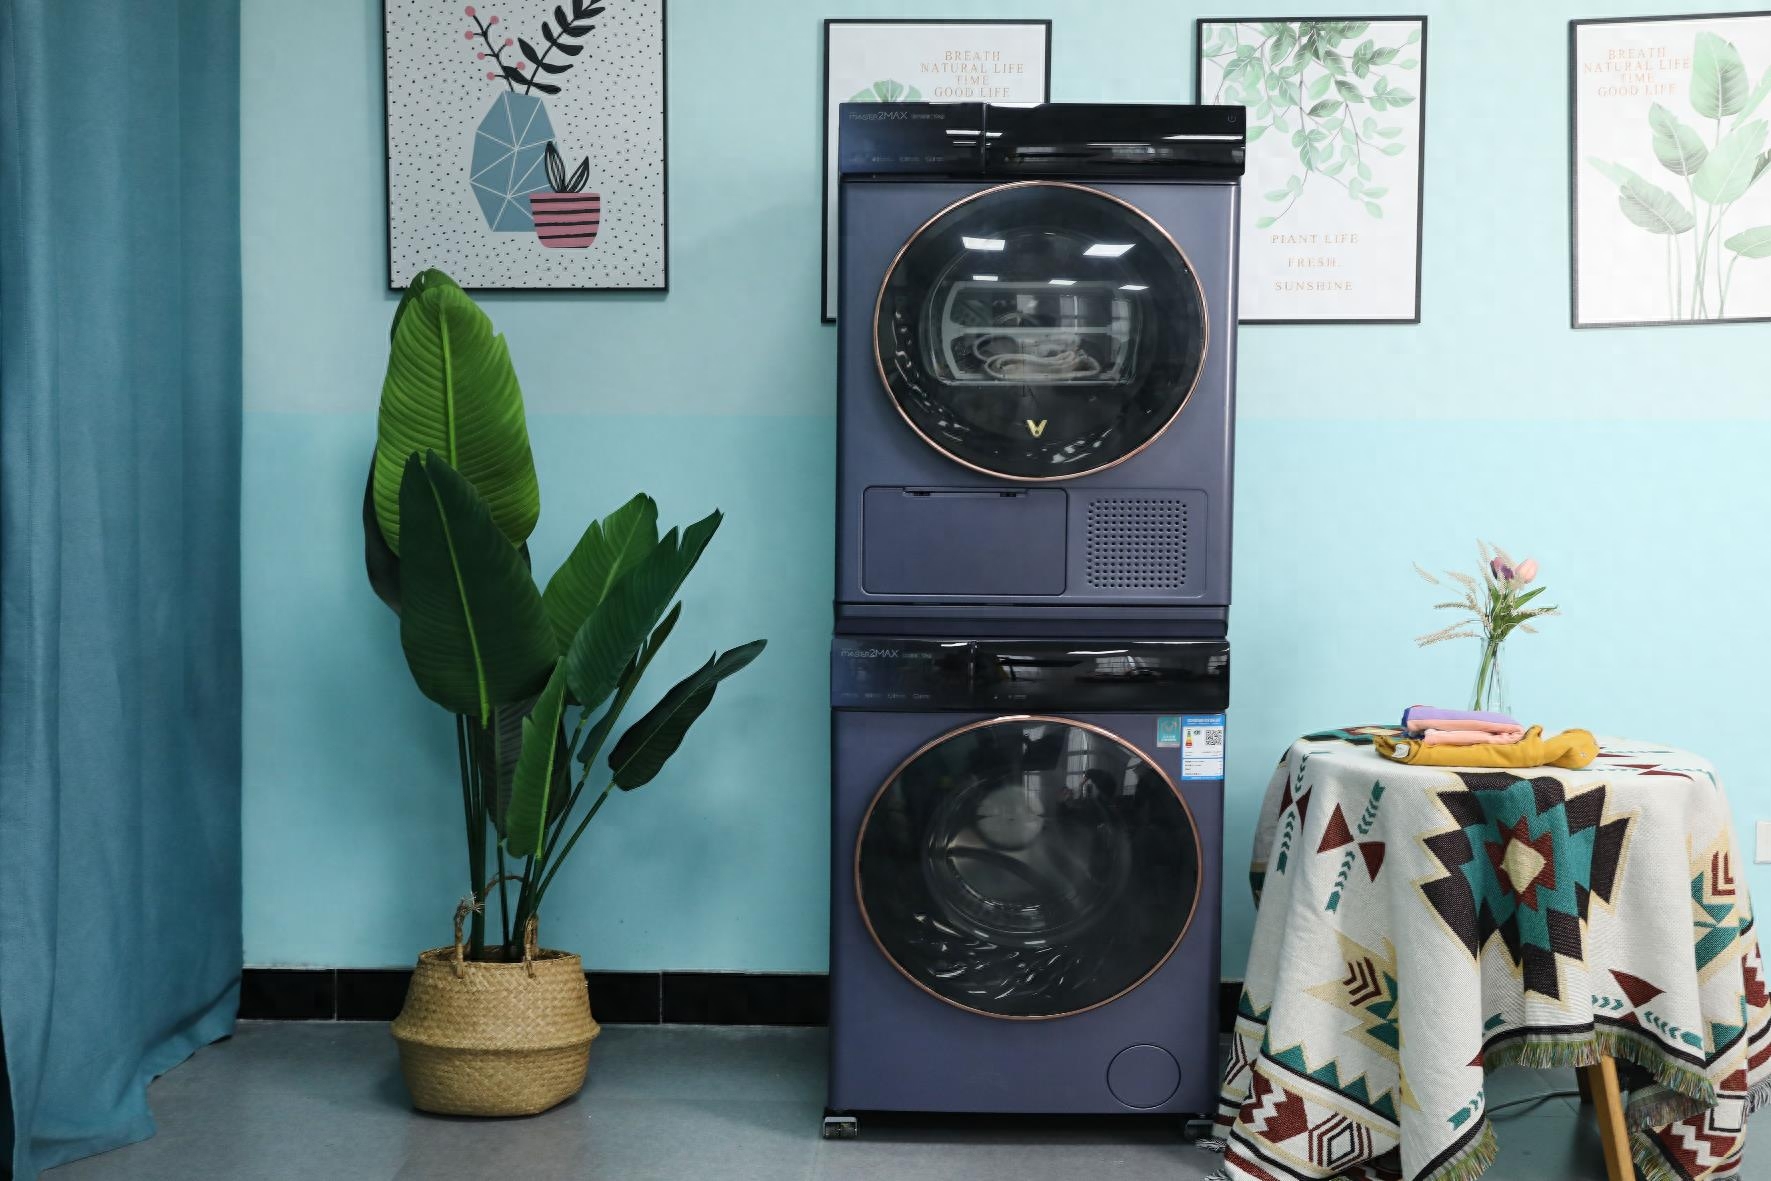 传统的洗烘一体机，在烘干时通常都是采用单一的高温模式，烘干后的衣服的确可以做到即洗即穿，但是高温对于一些衣物会造成伤害，影响后期的穿着效果和衣物本身的寿命。而且在